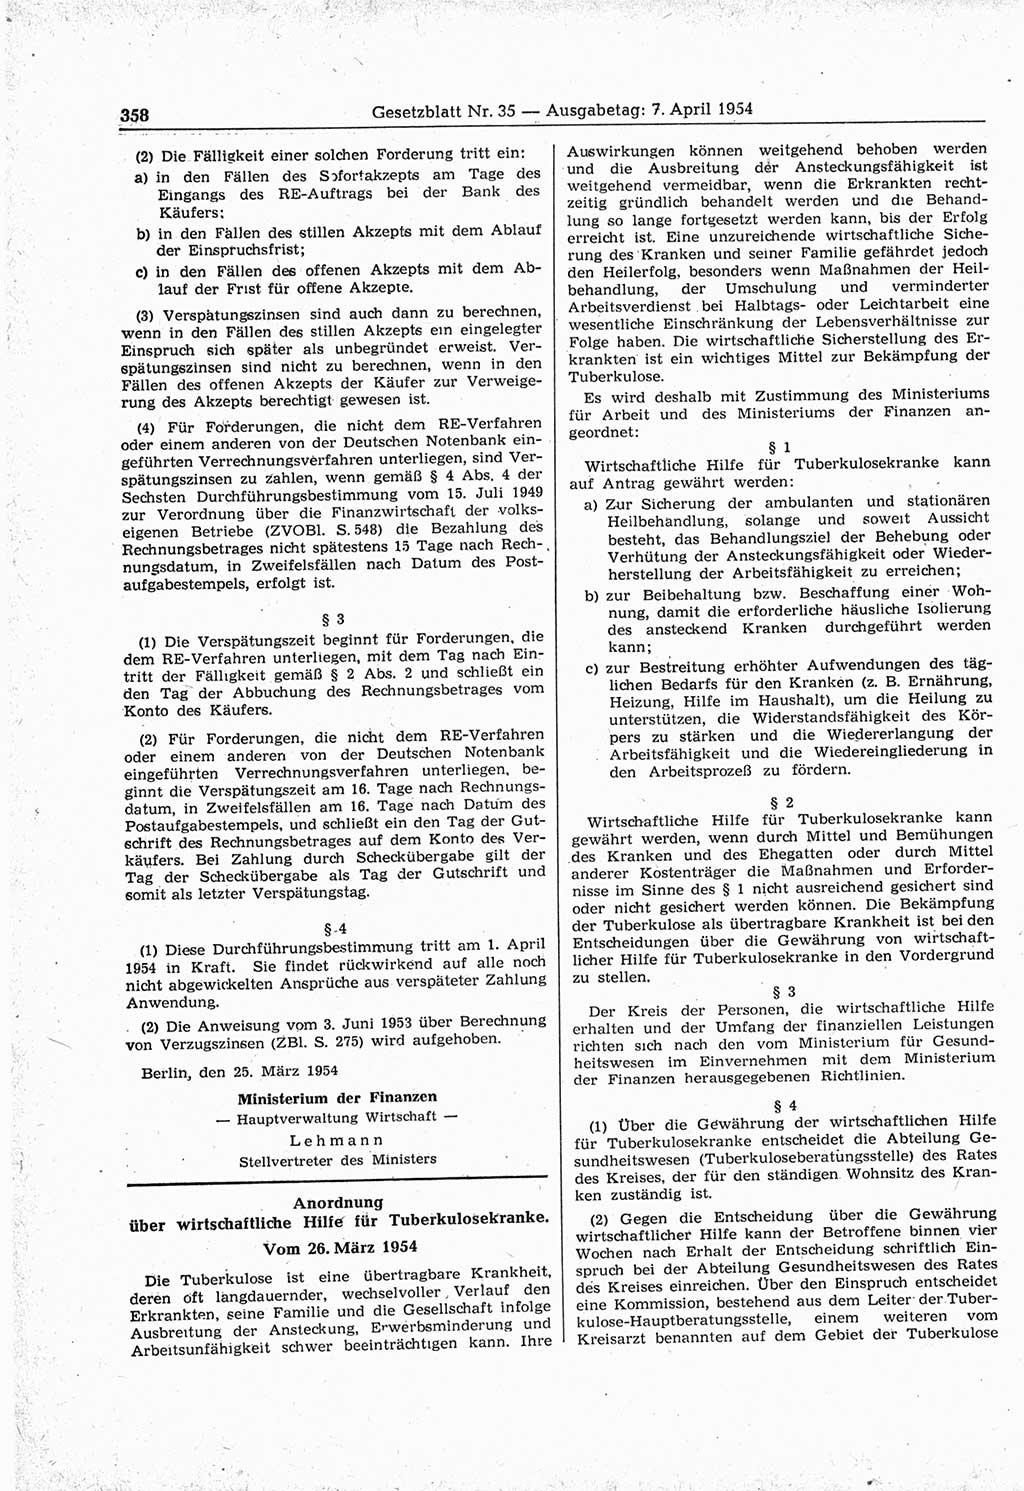 Gesetzblatt (GBl.) der Deutschen Demokratischen Republik (DDR) 1954, Seite 358 (GBl. DDR 1954, S. 358)